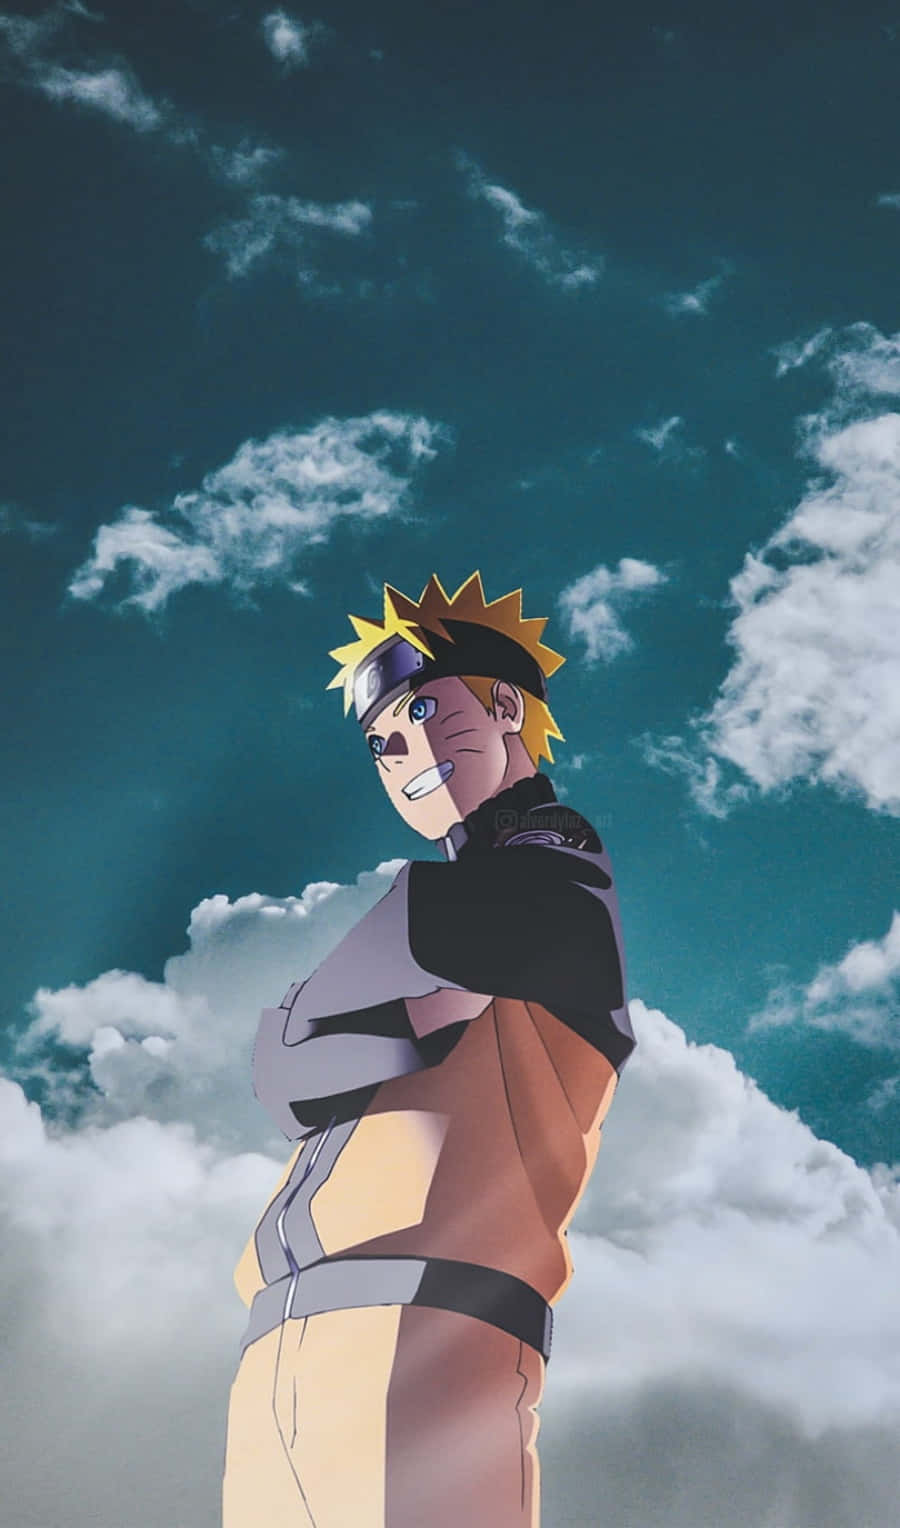 Narutobakgrundsbild - Naruto Bakgrundsbild